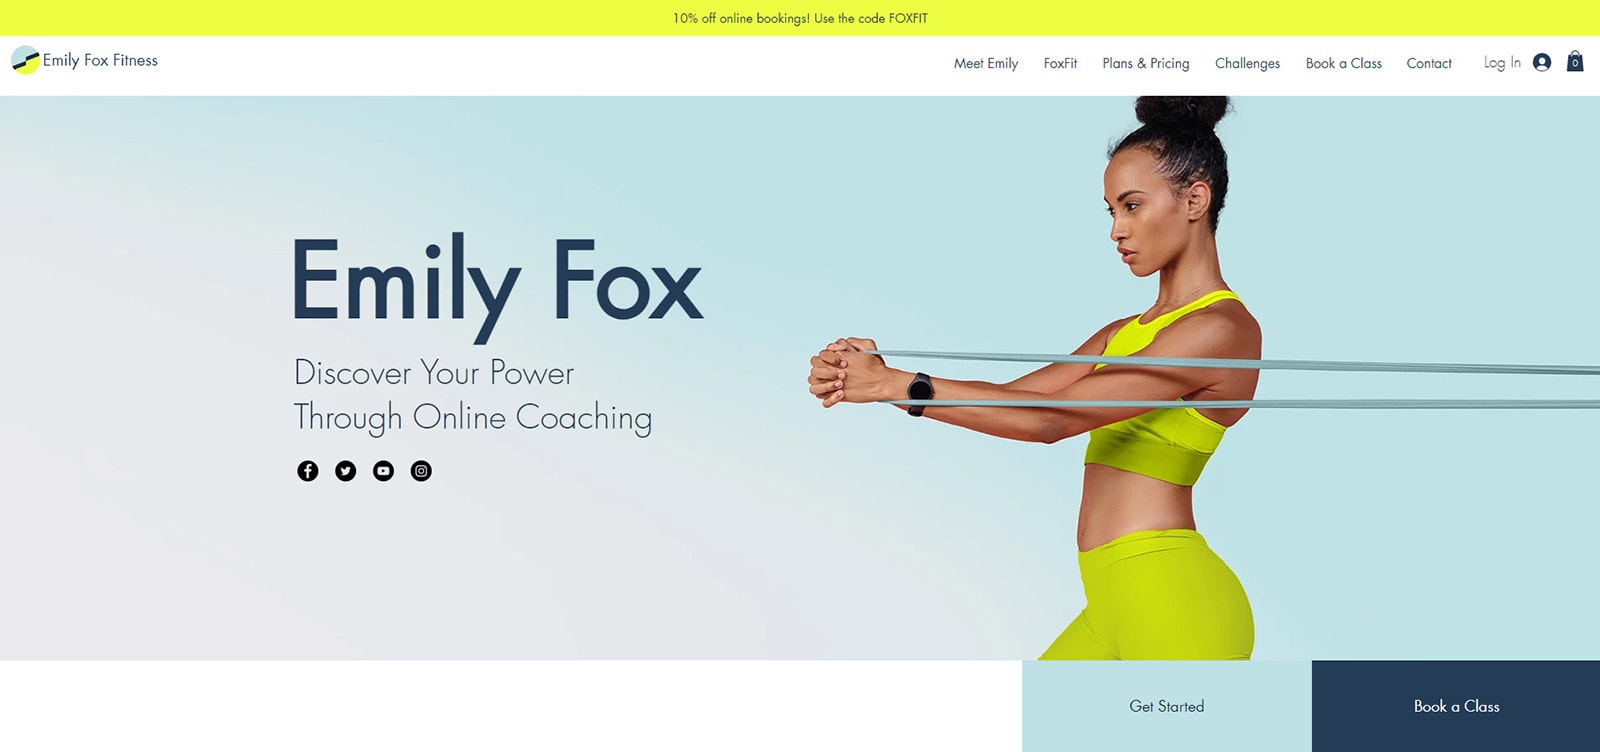 Foto von Emily Fox Fitness, einer flexiblen Wix-Vorlage für einzelne Fitnesstrainer.